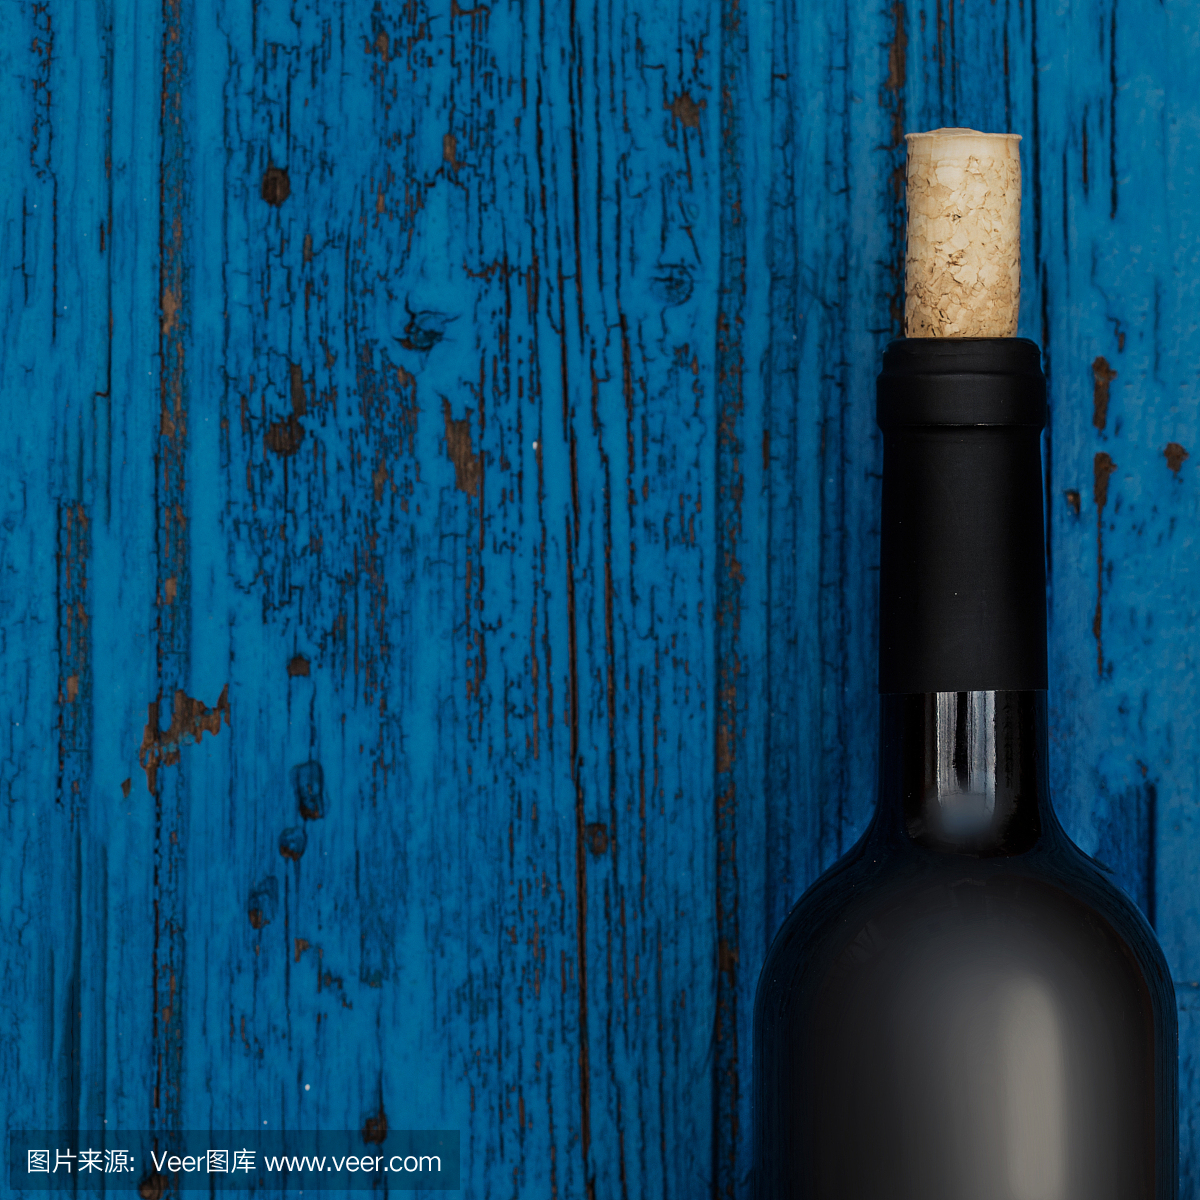 瓶葡萄酒在蓝色木制背景与copyspace,葡萄酒品